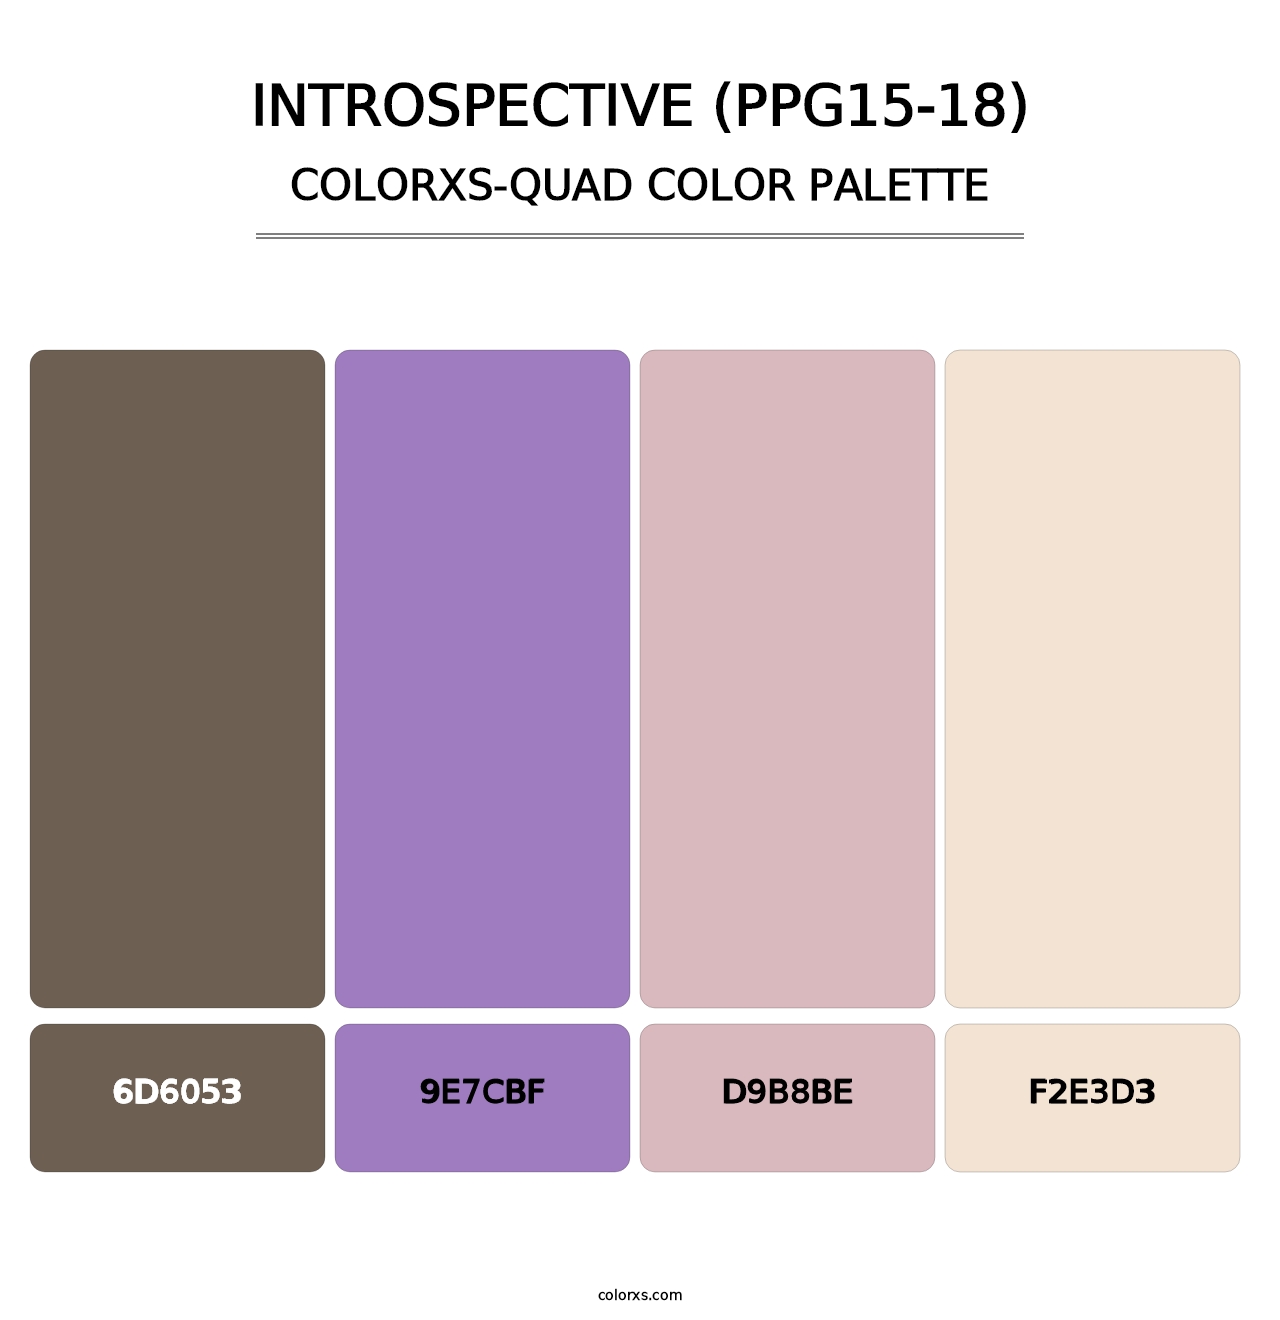 Introspective (PPG15-18) - Colorxs Quad Palette